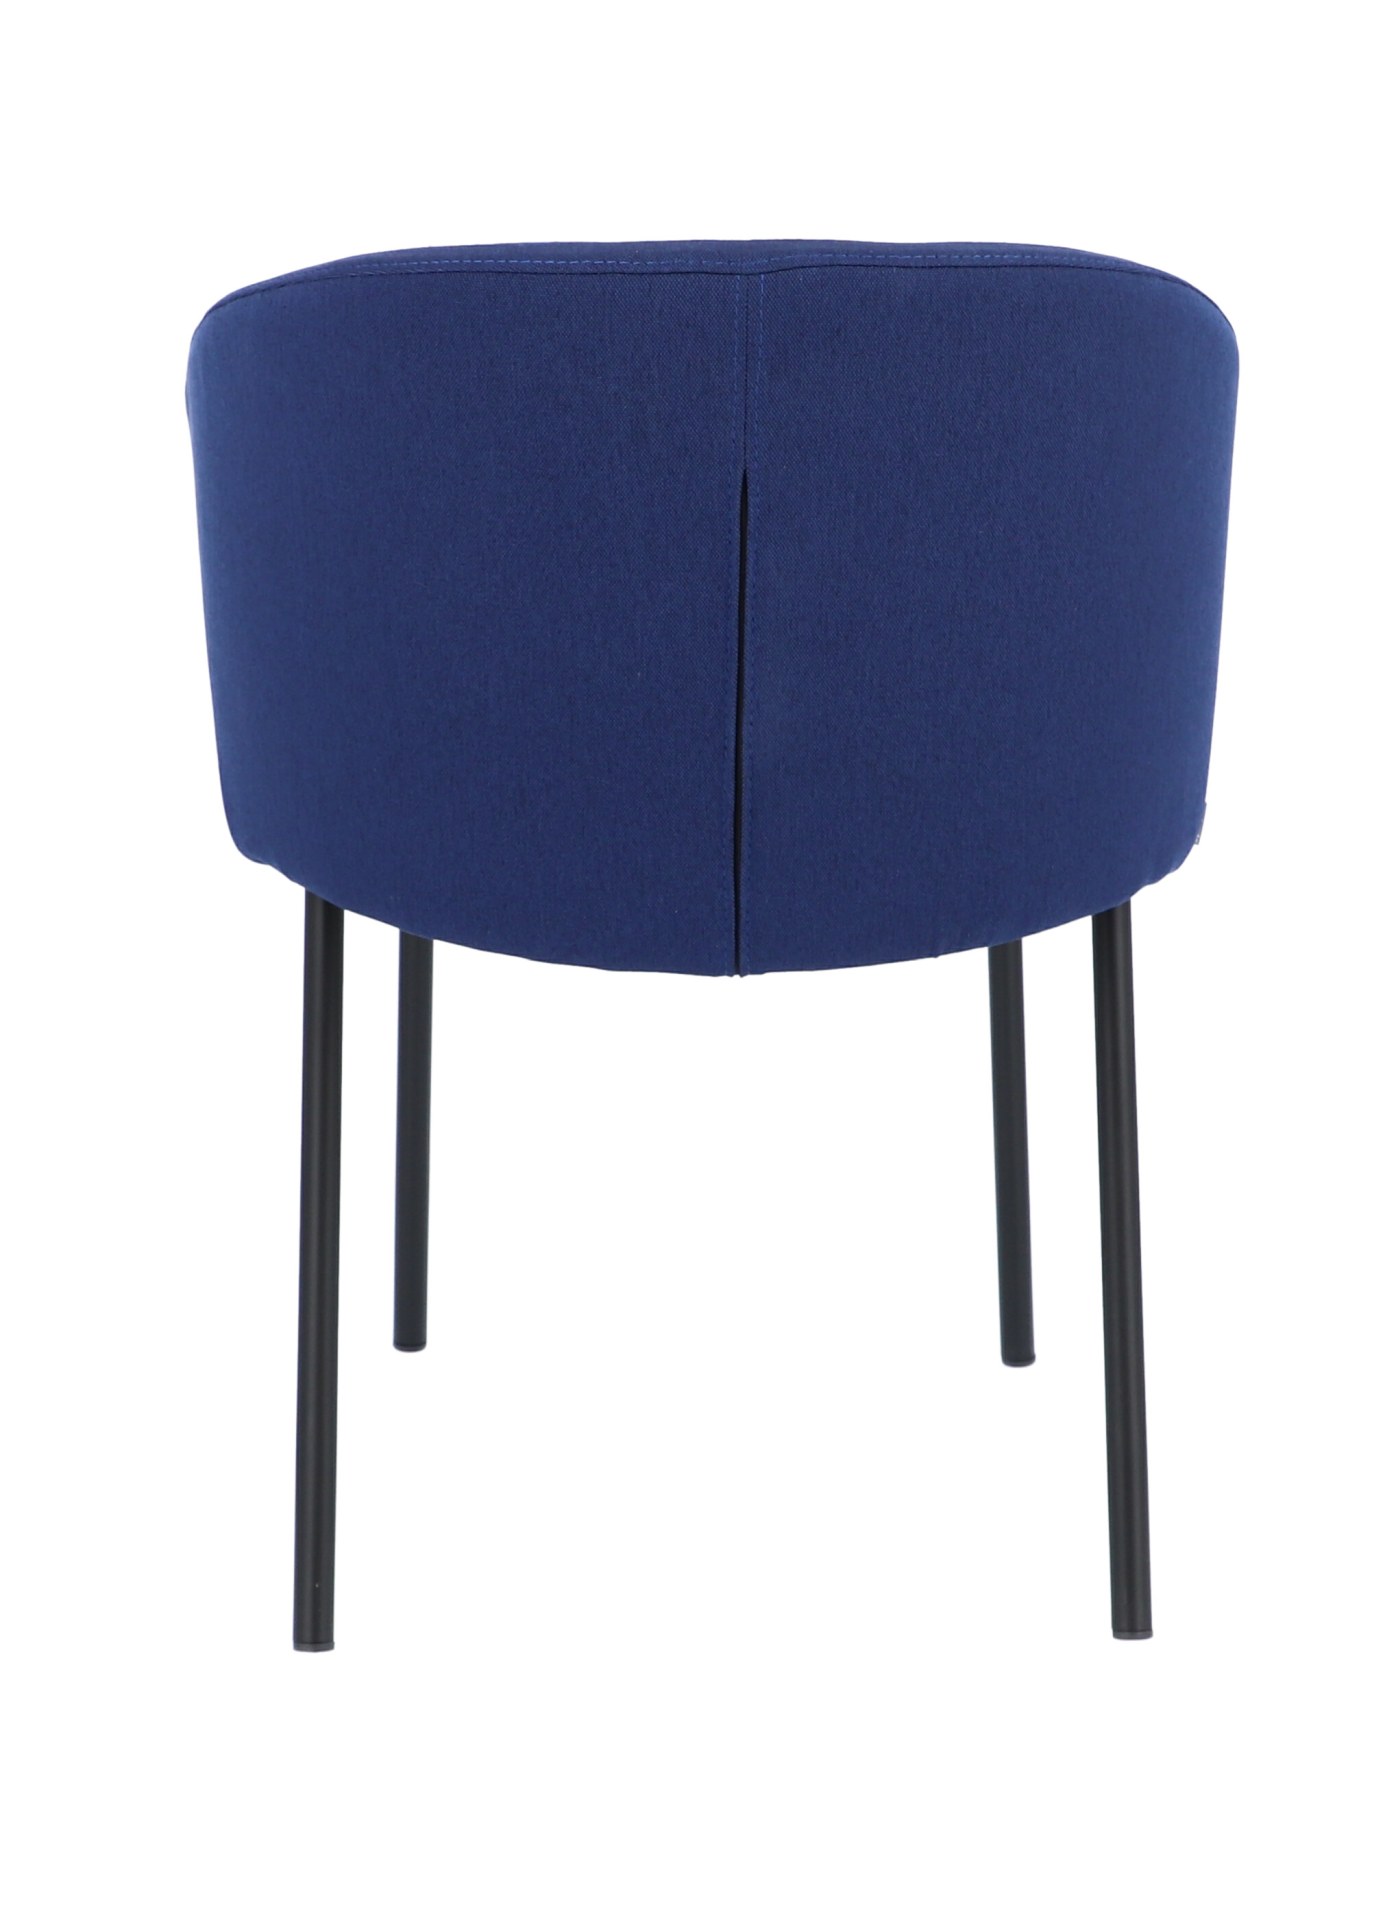 Der moderne Stuhl Mila wurde aus einem Metall Gestell hergestellt. Die Sitz- und Rückenfläche ist aus einem Stoff Bezug. Die Farbe des Stuhls ist Blau. Es ist ein Produkt der Marke Jan Kurtz.